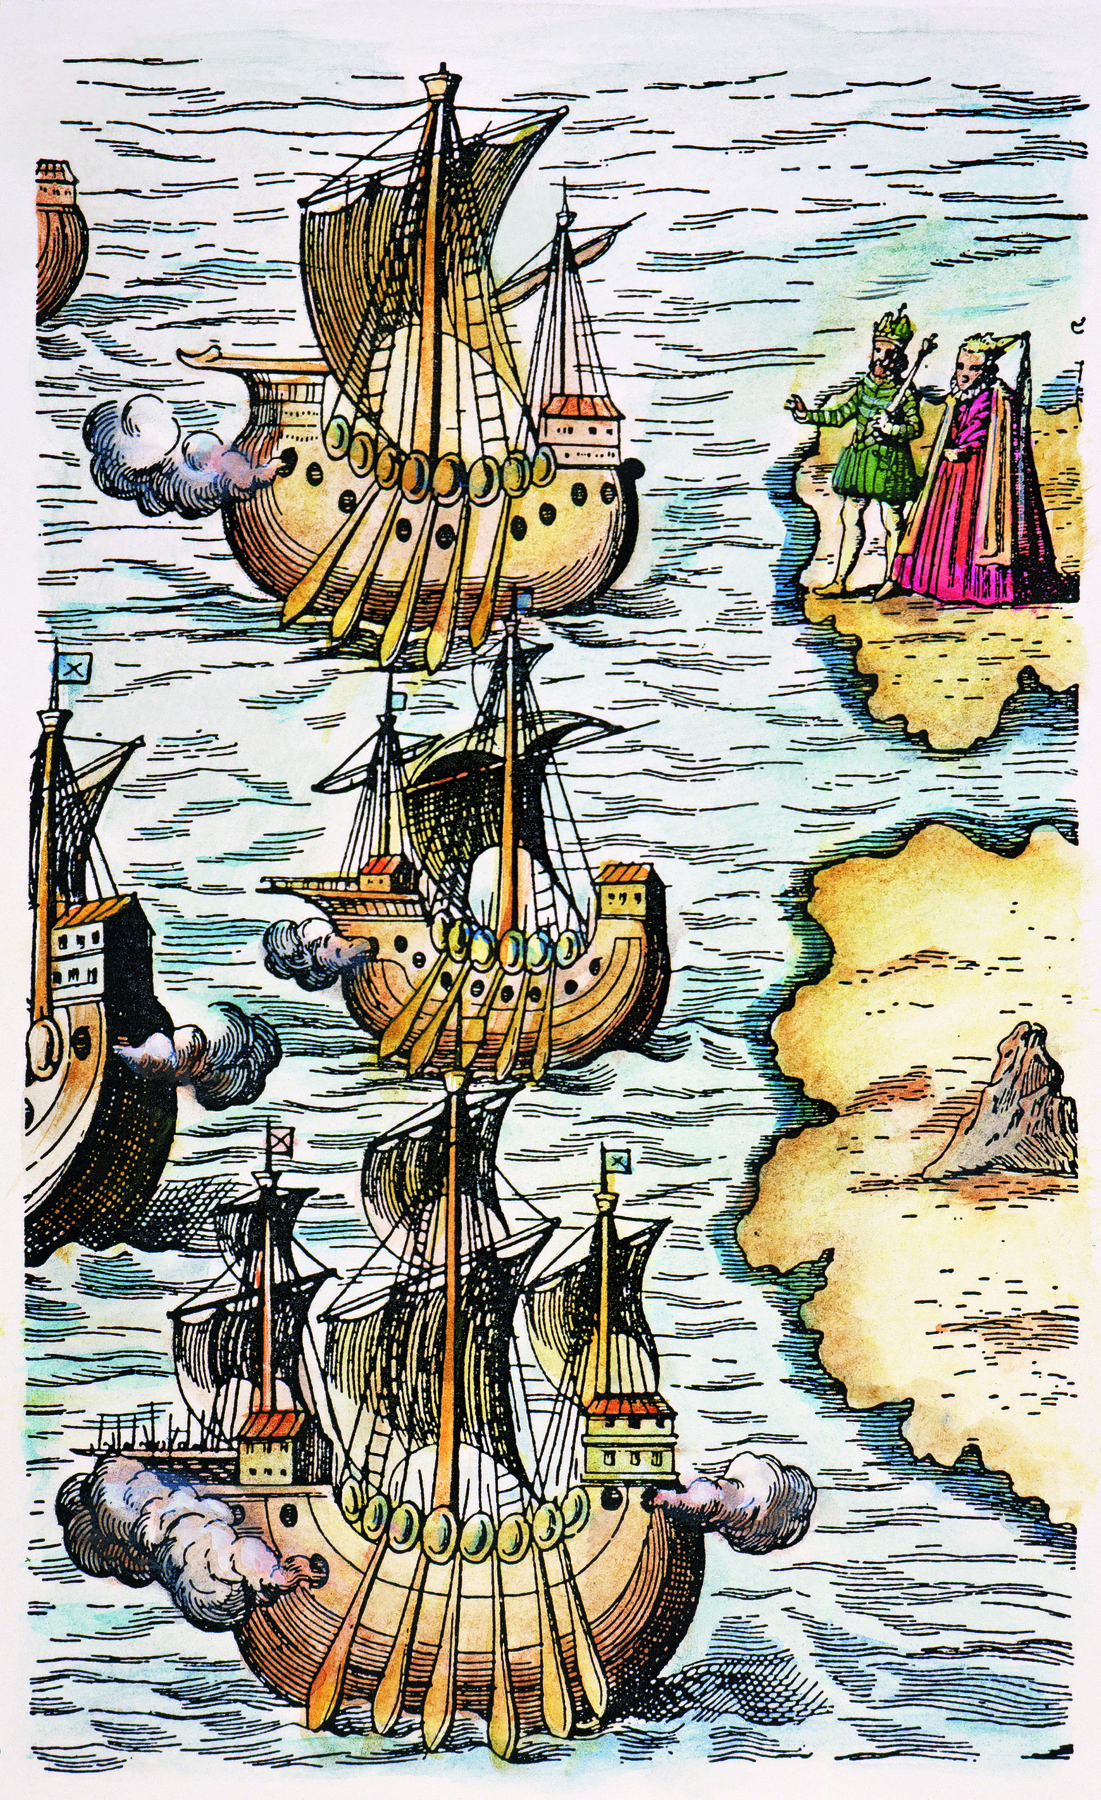 Gravura. À direita, um rei e uma rainha em terra. Eles acenam para embarcações no mar, à esquerda.